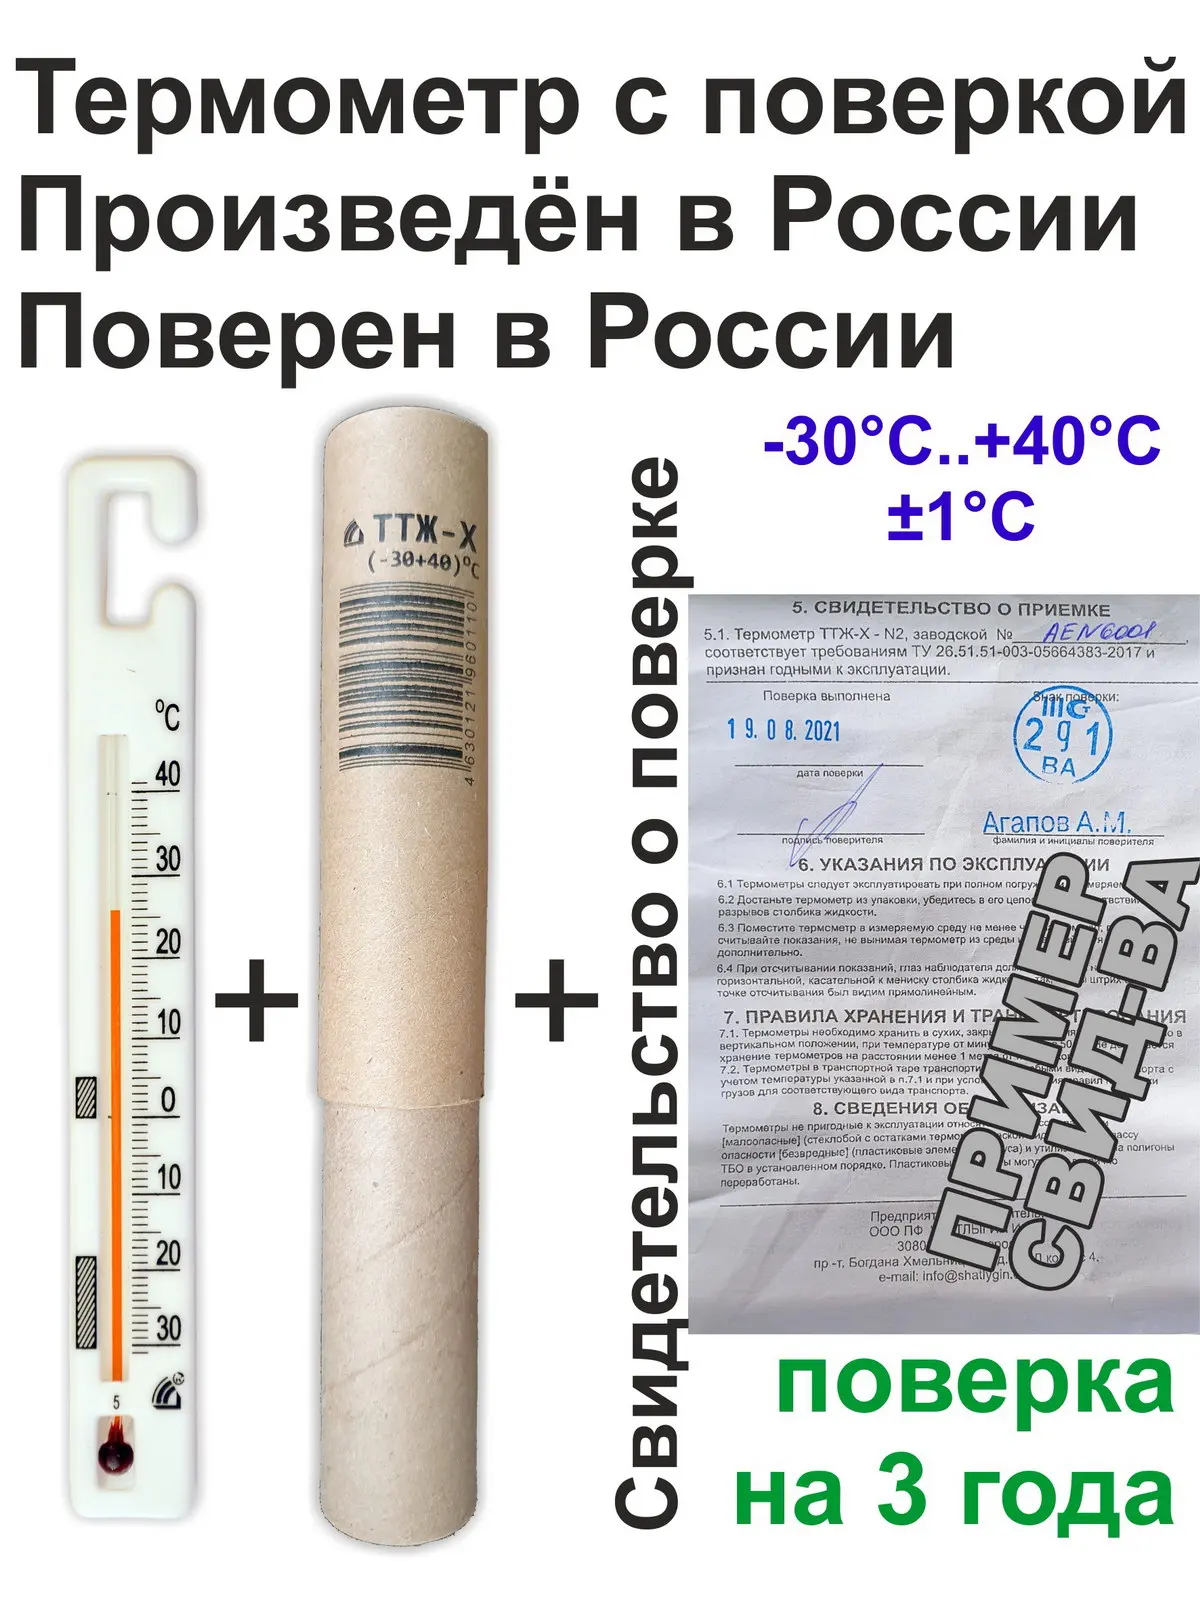 Fgis gost ru fundmetrology results. Термометр ТТЖ-Х-n2. Термометр для холодильников ТТЖ-Х. Термометр для холодильника Шатлыгин.